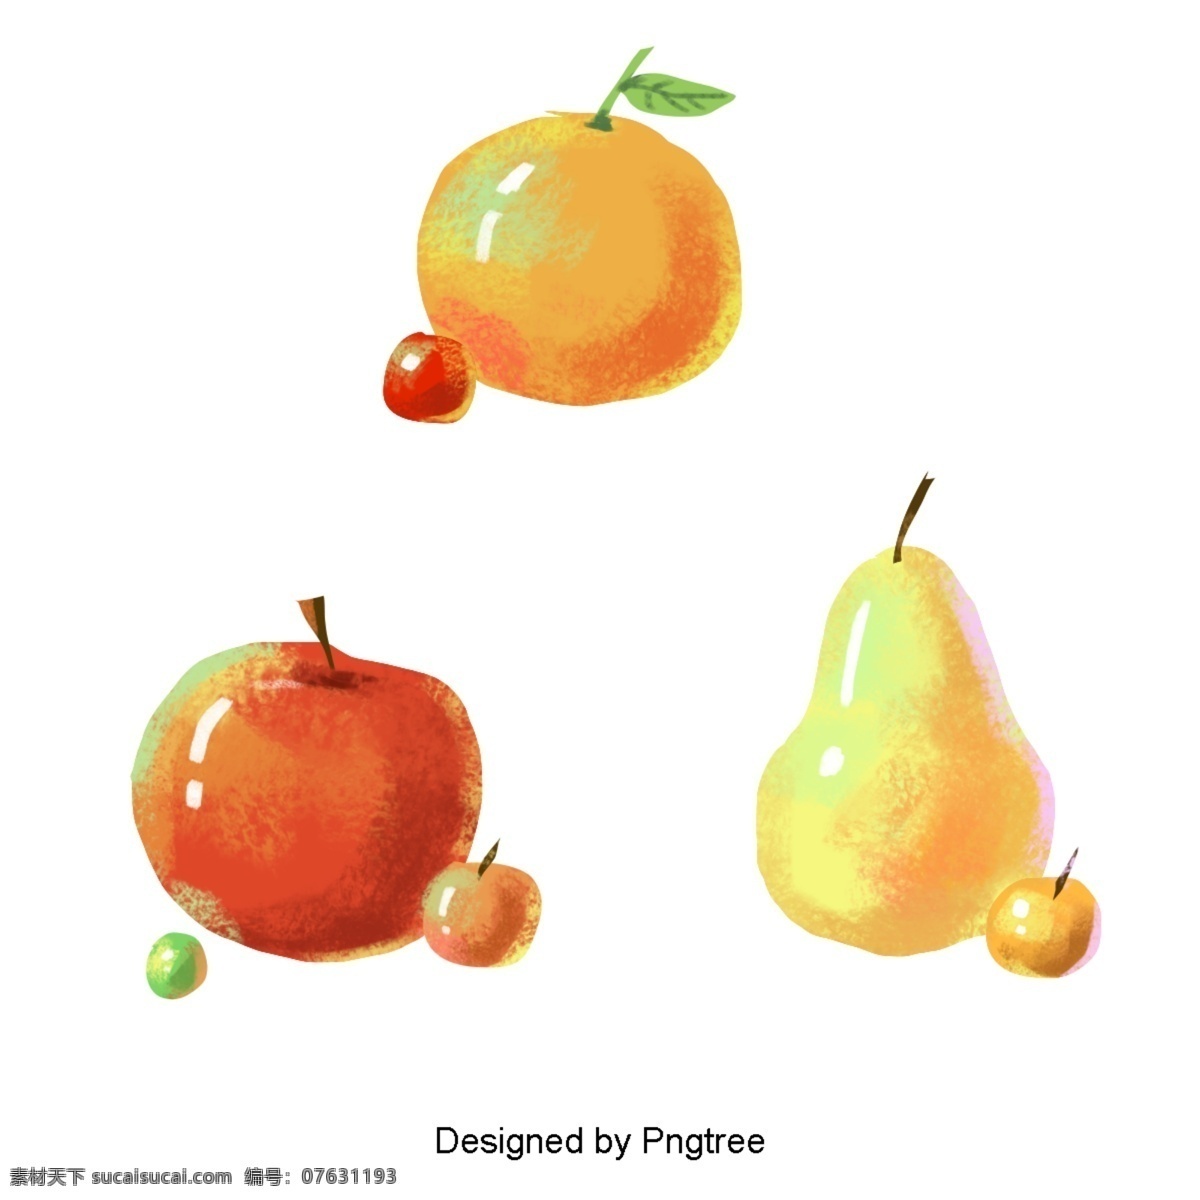 美丽 卡通 可爱 手绘 创意 秋 果 绘画 秋天 水果 苹果梨 橘子